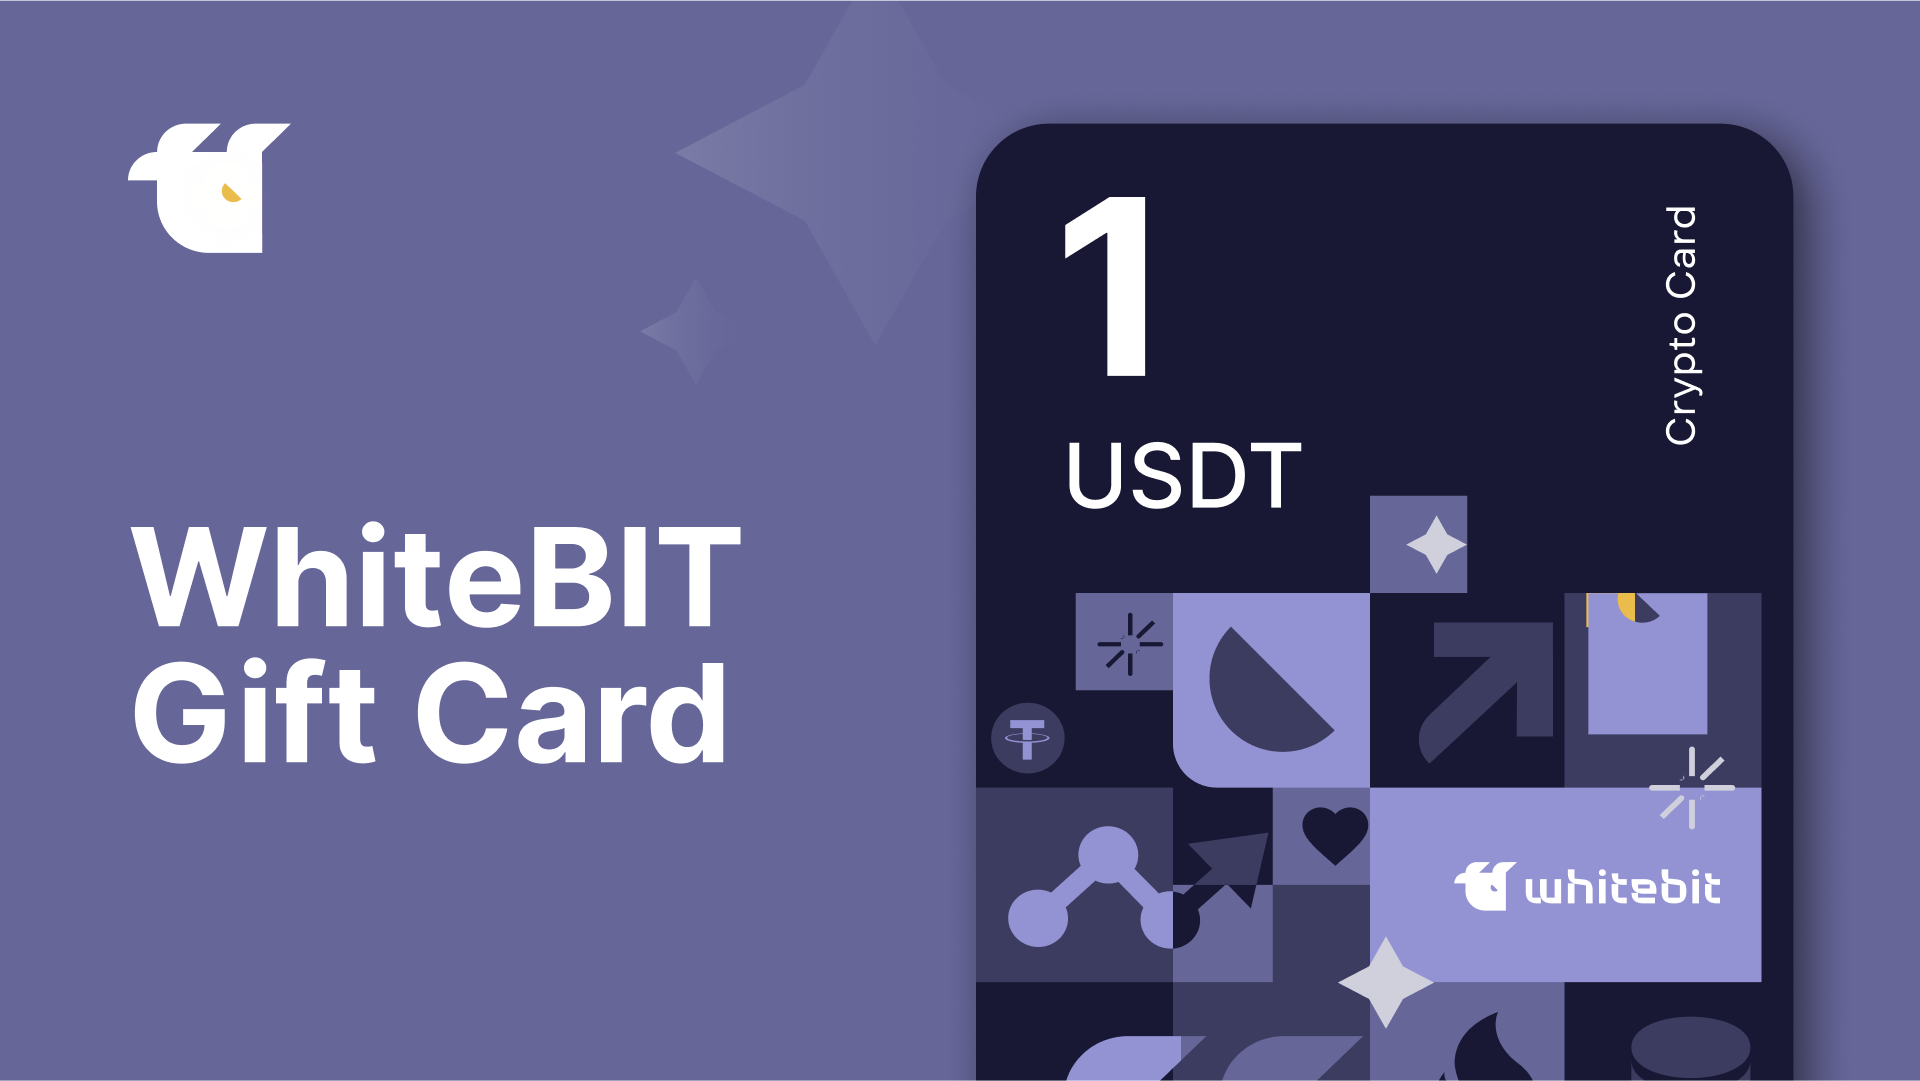 WhiteBIT 1 USDT Gift Card $1.33